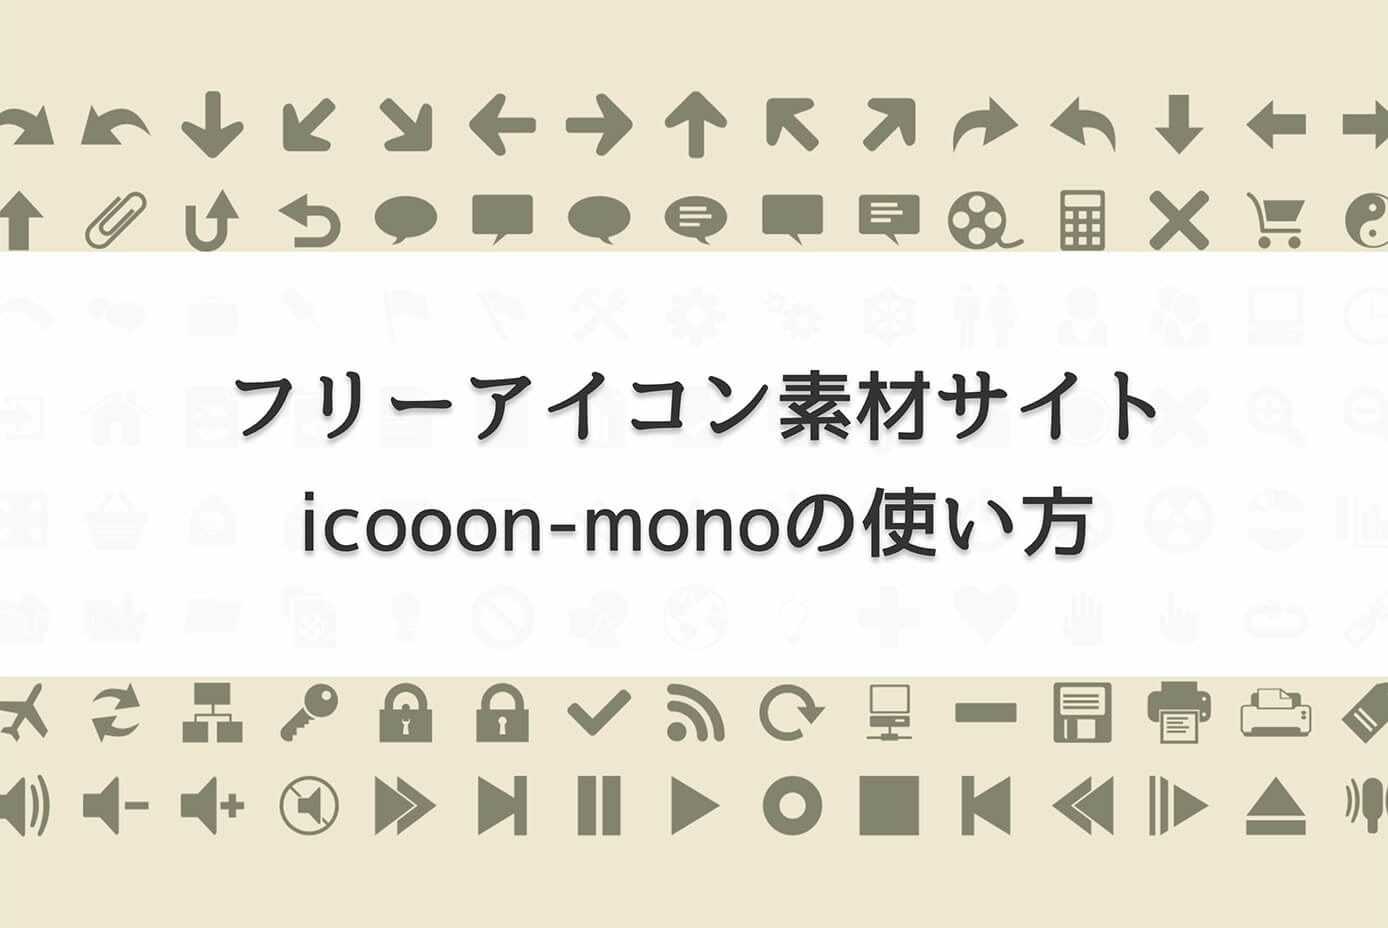 フリーアイコン素材サイト icooon-monoの使い方